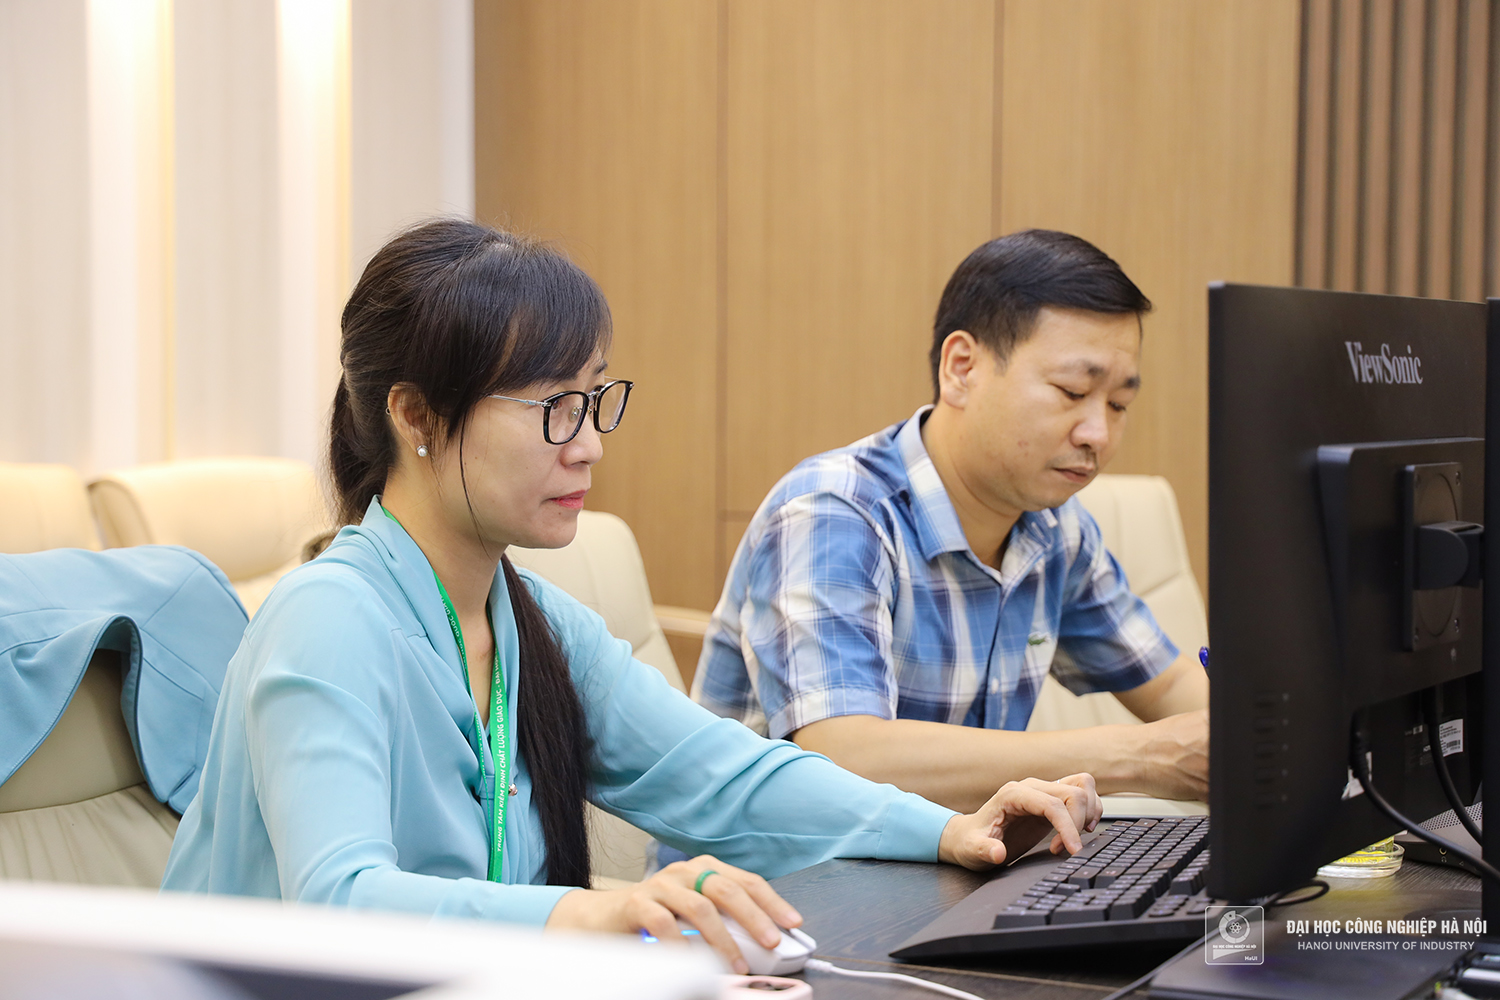 Khảo sát sơ bộ đánh giá chất lượng giáo dục Trường Đại học Công nghiệp Hà Nội